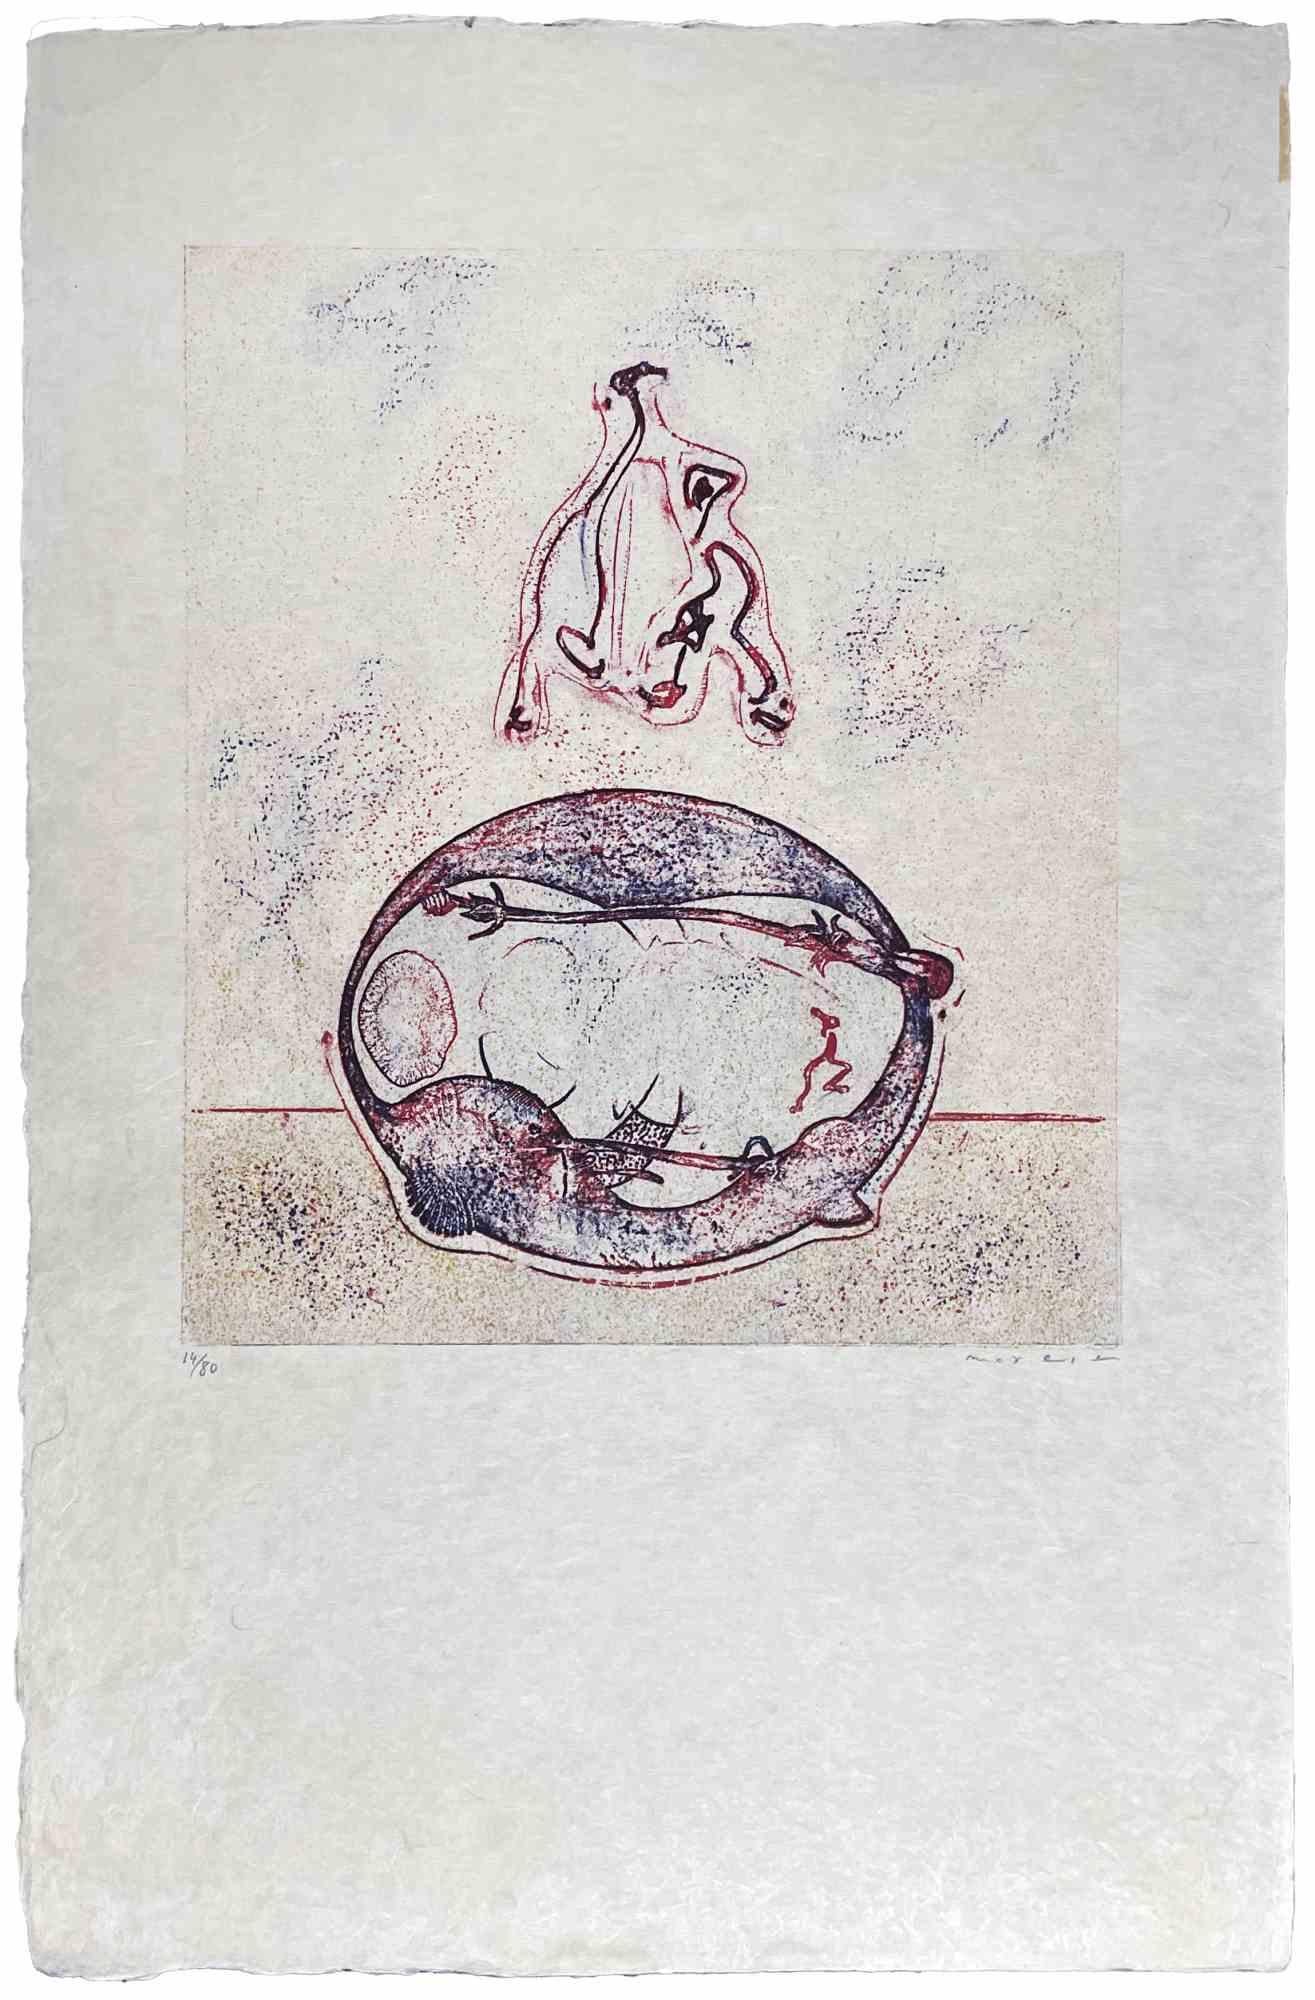 Après moi est une œuvre d'art revisitée par Max Ernst en édition de luxe pour le magazine d'art XXème Siècle. Lithographie sur papier japonais, 1971. 
Édition 14/80. Signé à la main et numéroté. 29 x 25 cm Prov. Coll. Jorg Kees.
Très bon état.